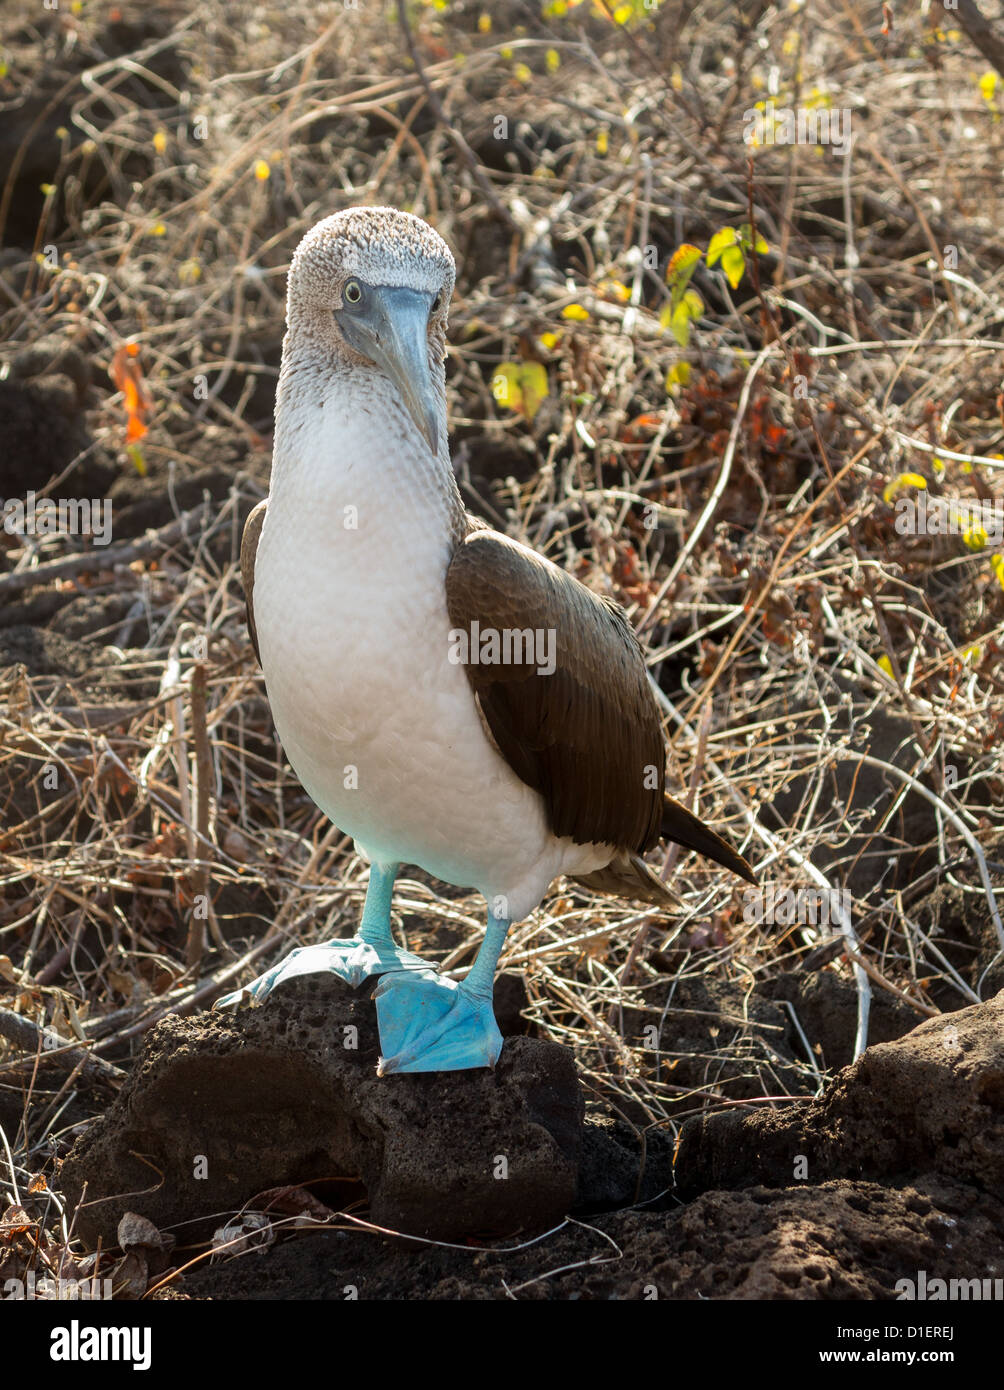 Pieds rouges bleu est célèbre pour les oiseaux qui vivent dans le parc national des Îles Galapagos en Équateur Banque D'Images